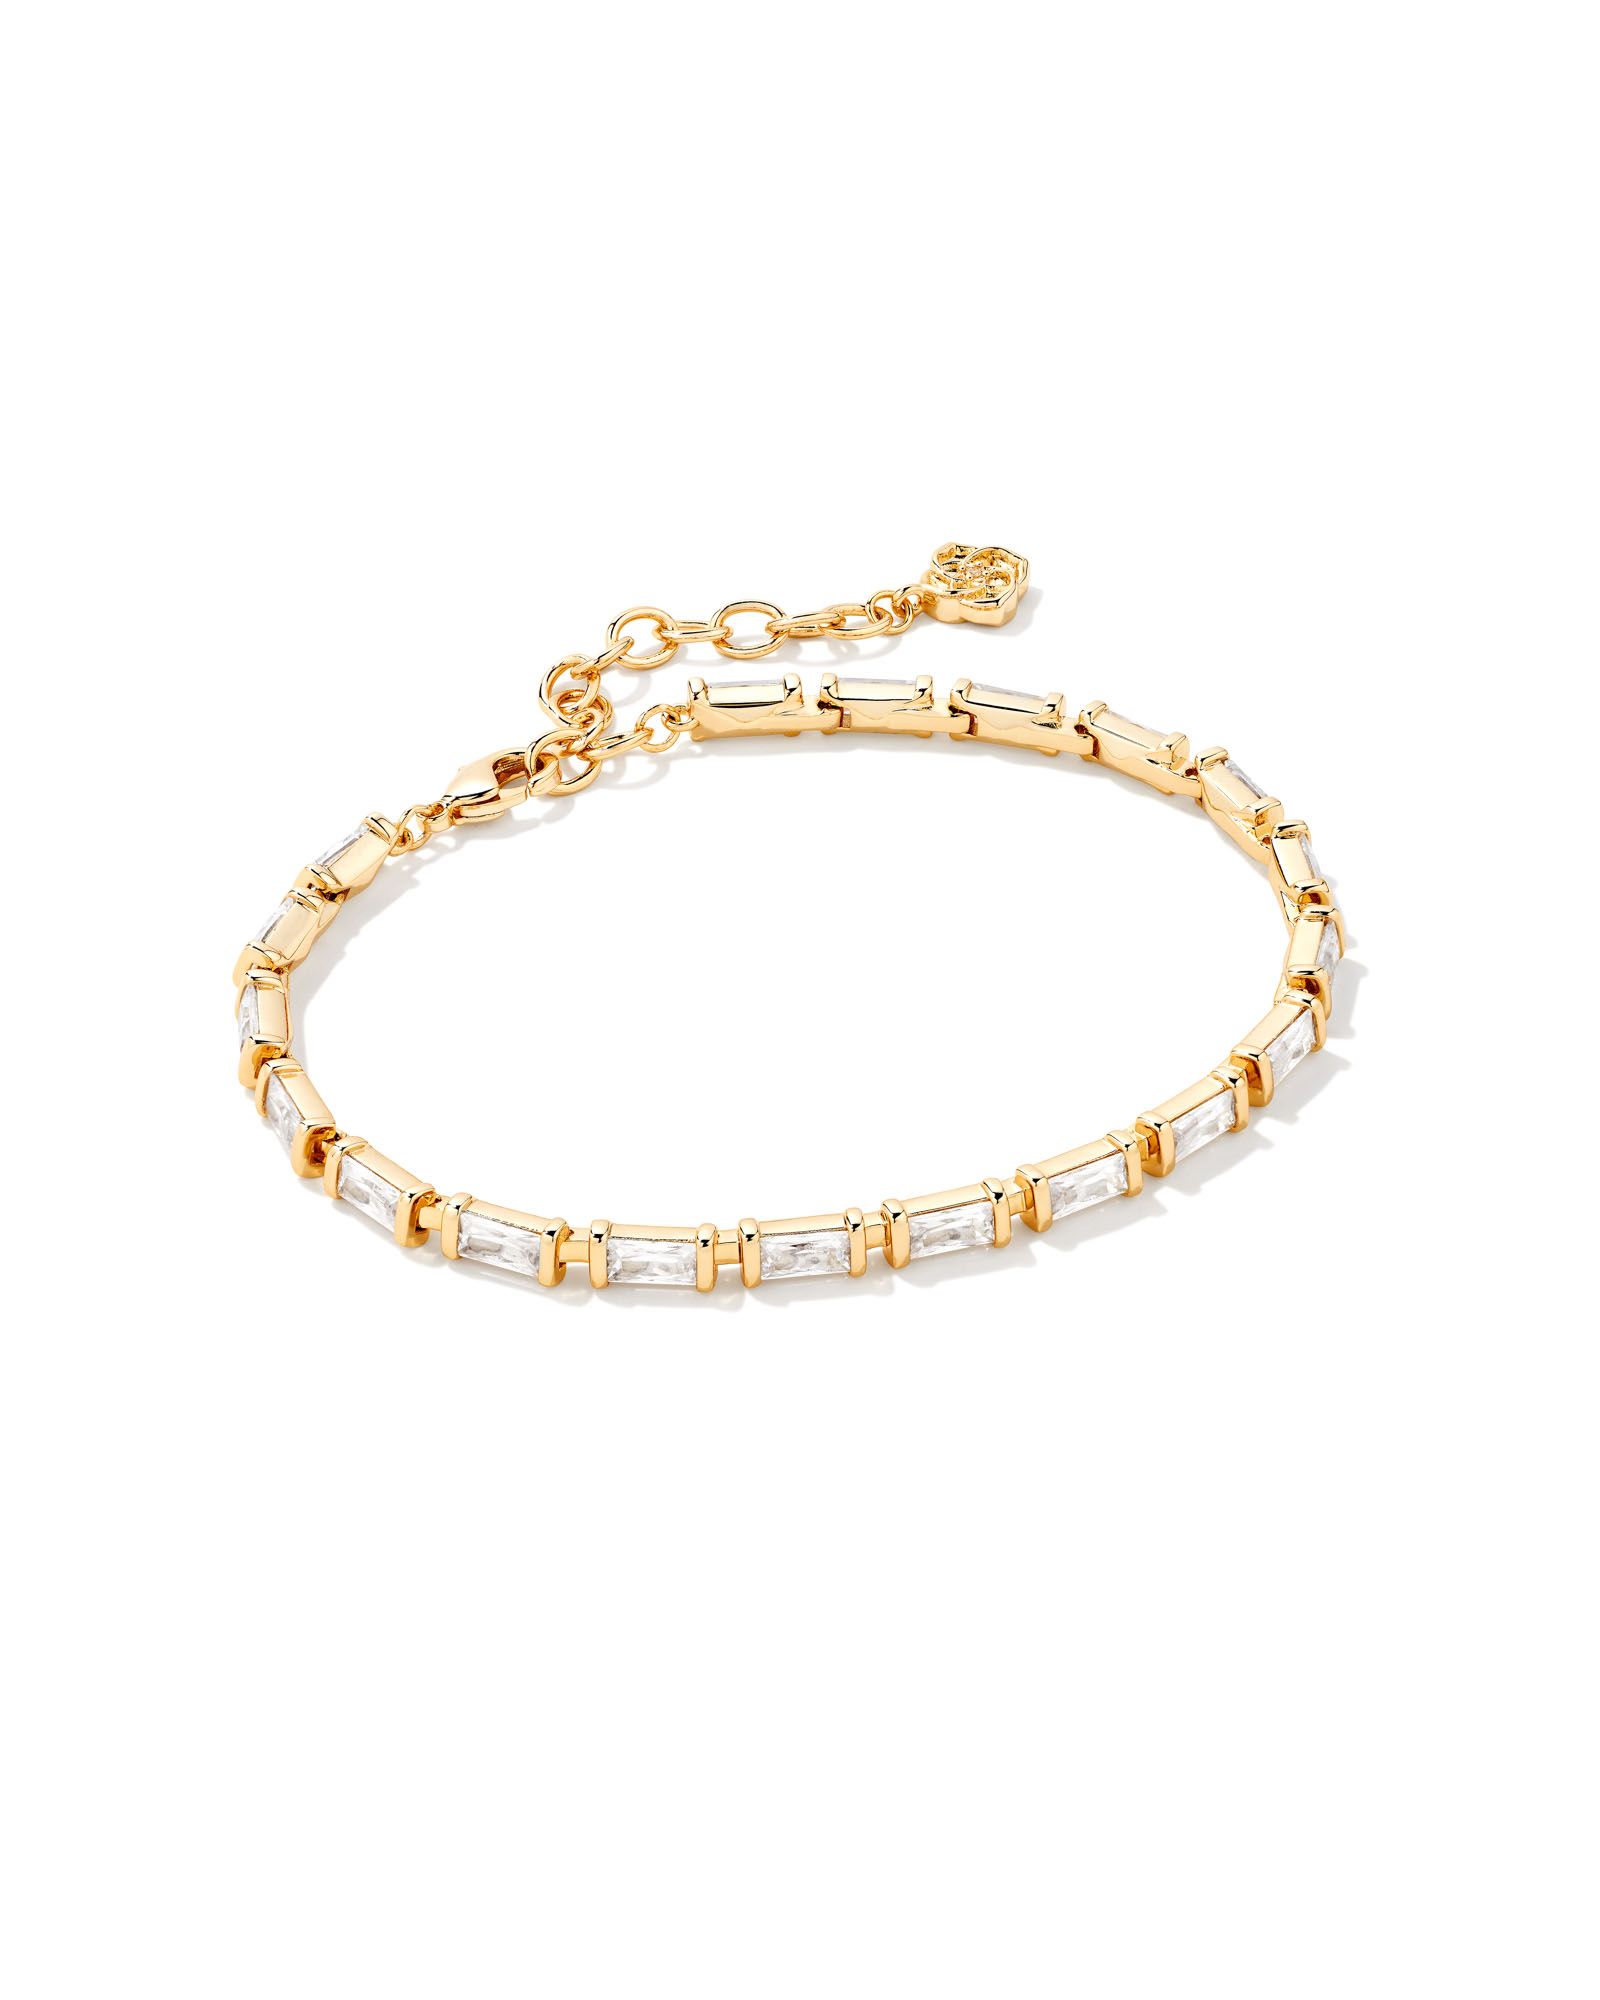 Juliette Gold Delicate Chain Bracelet in White Crystal | Kendra Scott | Kendra Scott